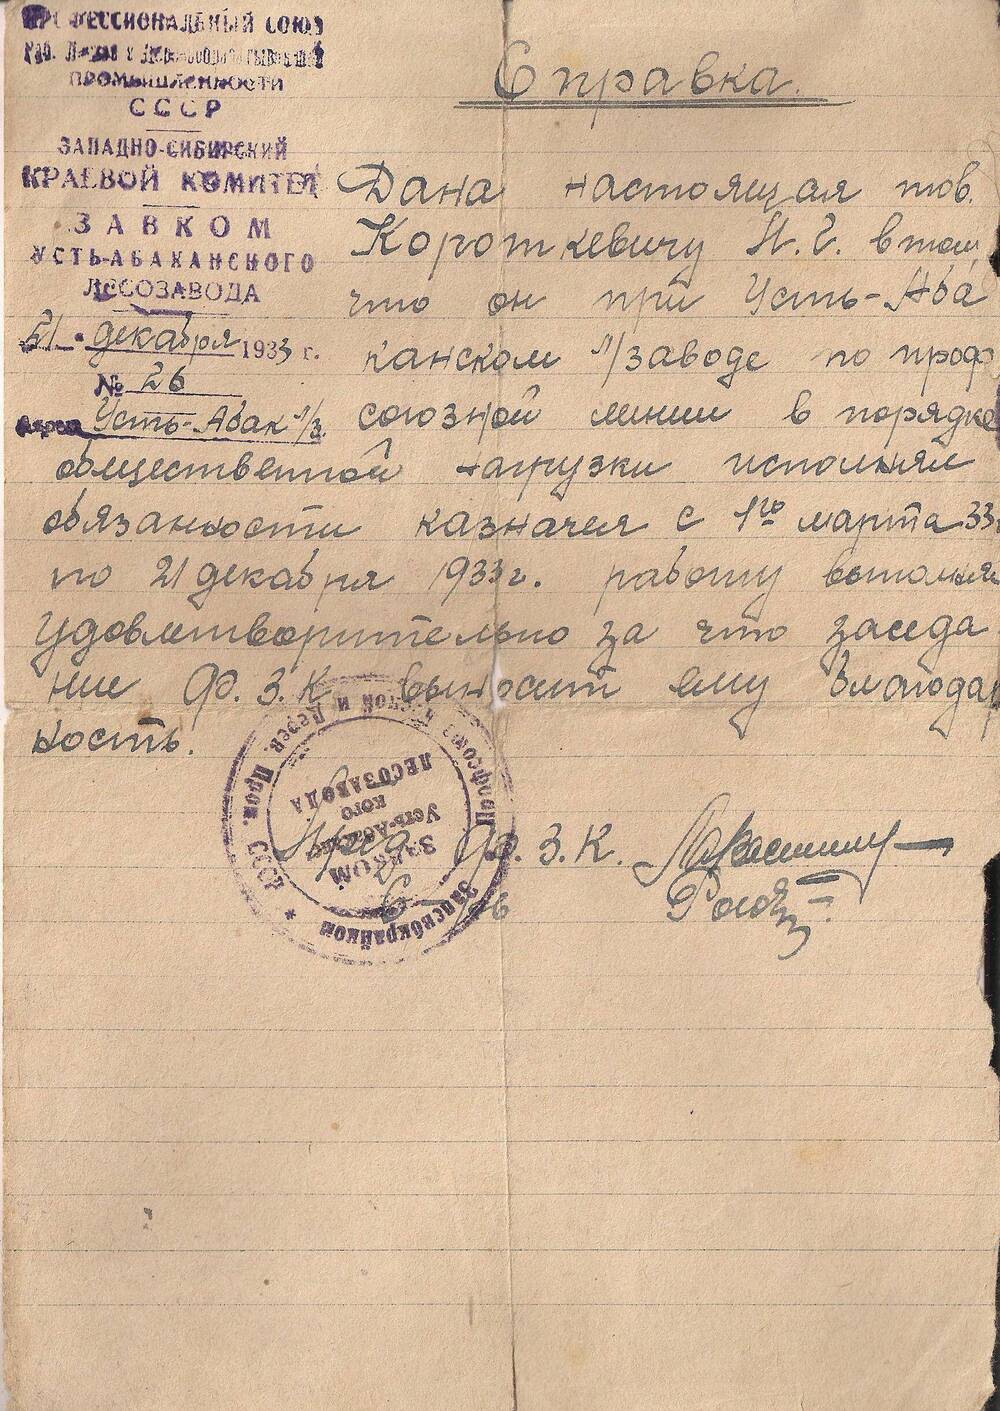 Справка Короткевичу П.Г. в том, что исполнял обязанности казначея